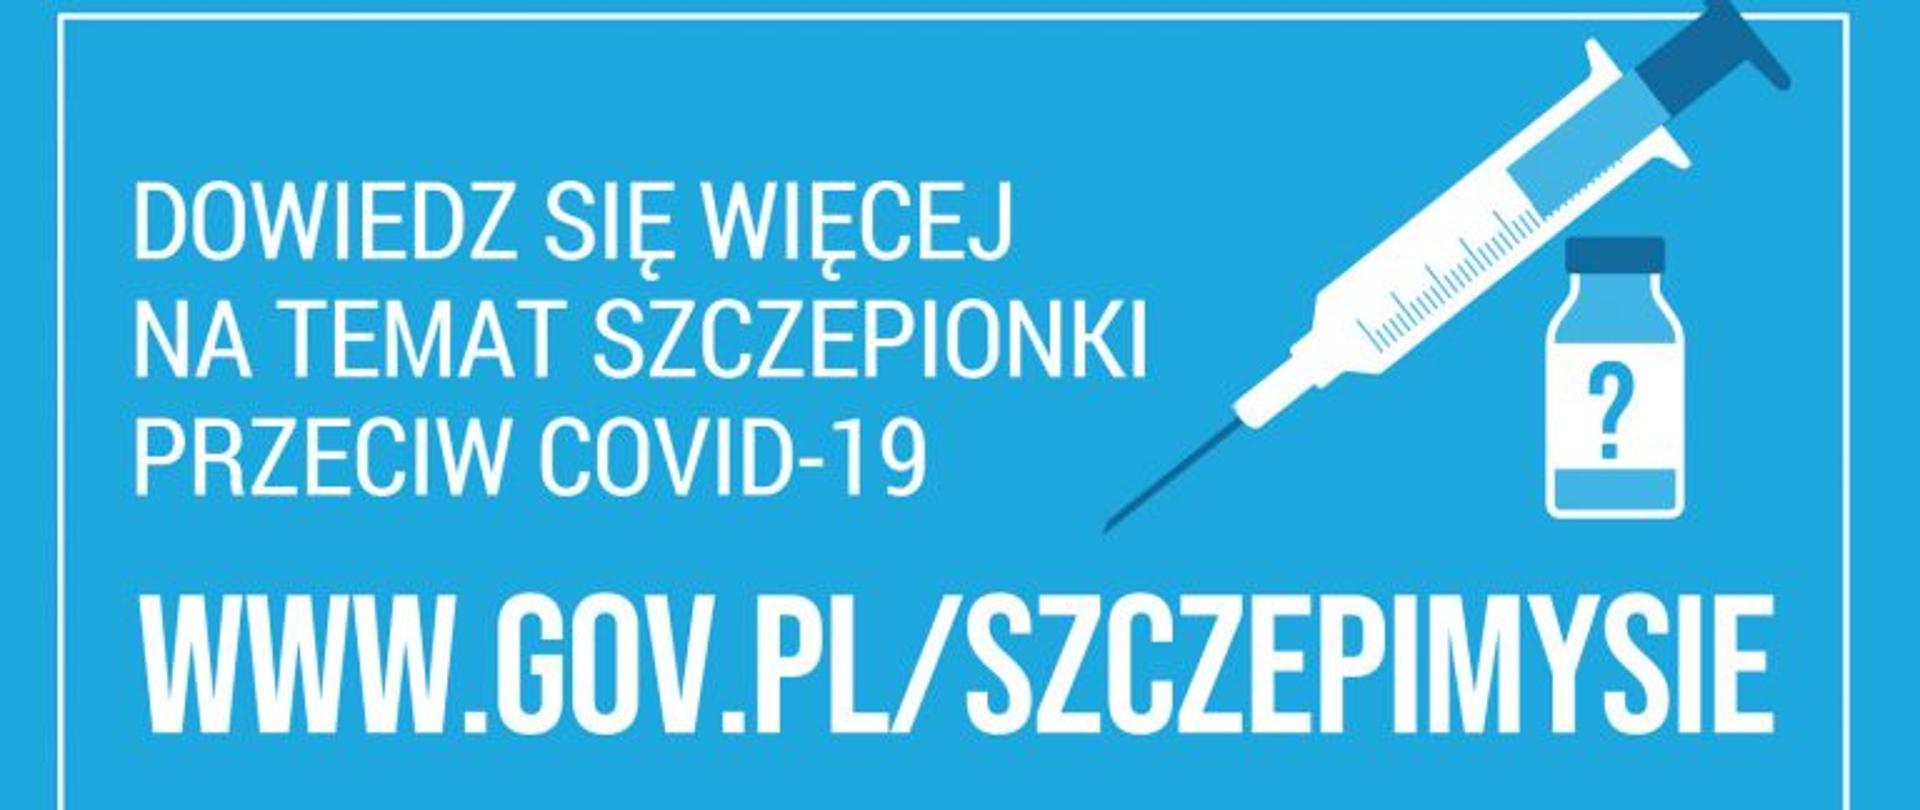 Zdjęcie przedstawia baner akcji SZCZEPIMYSIĘ. Na niebieskim tle z grafiką szczepionki oraz fiolki zawarto link do strony informacyjnej o szczepionce przeciwko COVID-19: www.gov.pl/szczepimysie .